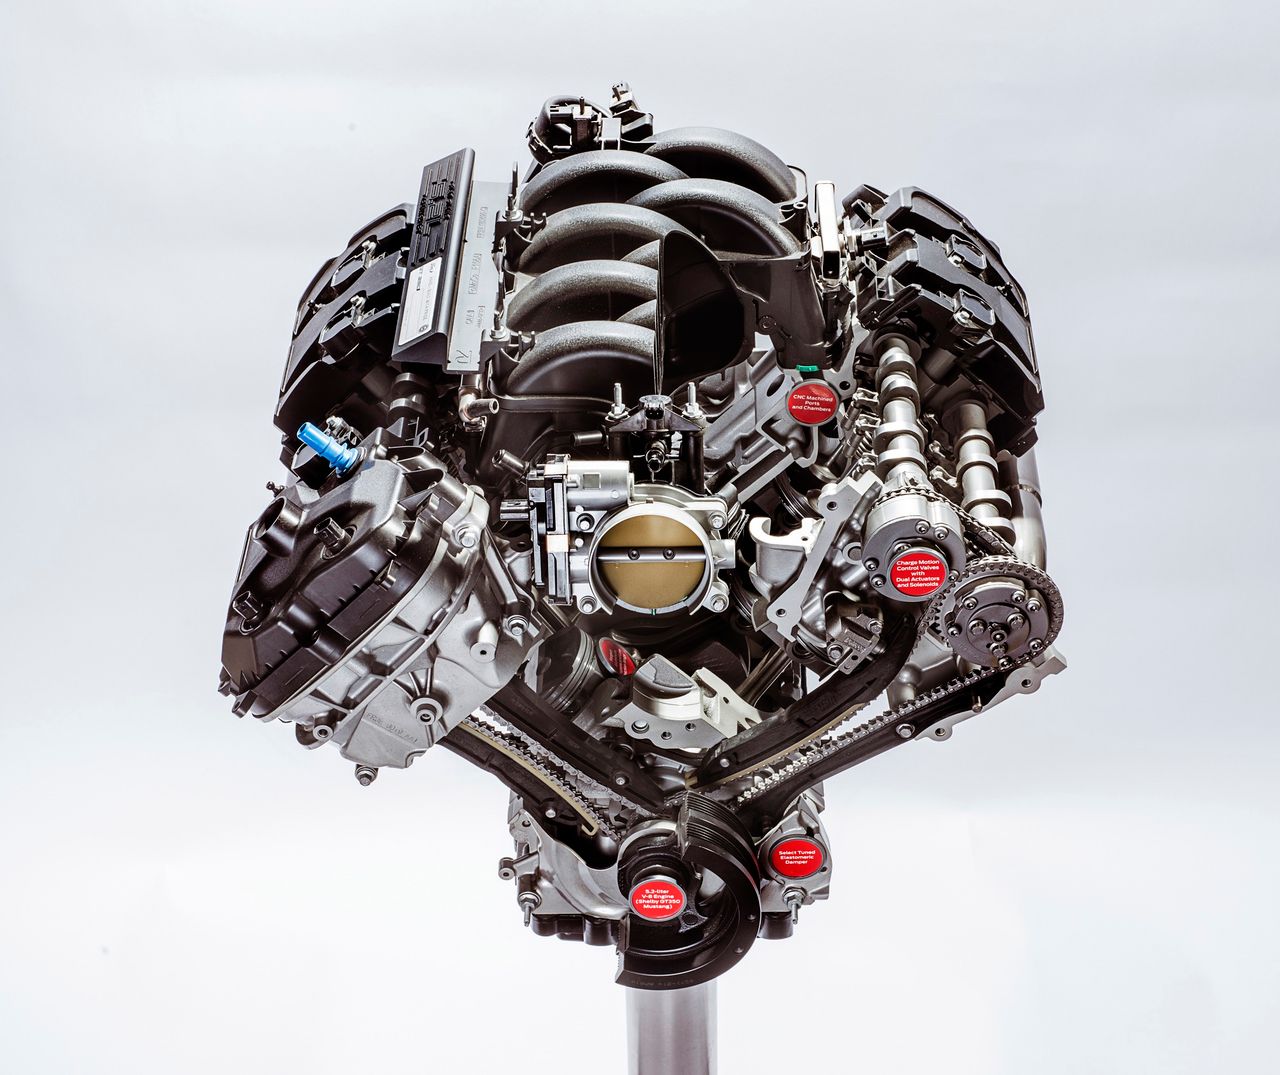 5,2-litrowy wolnossący silnik V8 Forda montowany w Shelby GT350 i GT350R. Jest to najmocniejsza jednostka wolnossąca w historii tego producenta - rozwija 533 KM bez doładowania